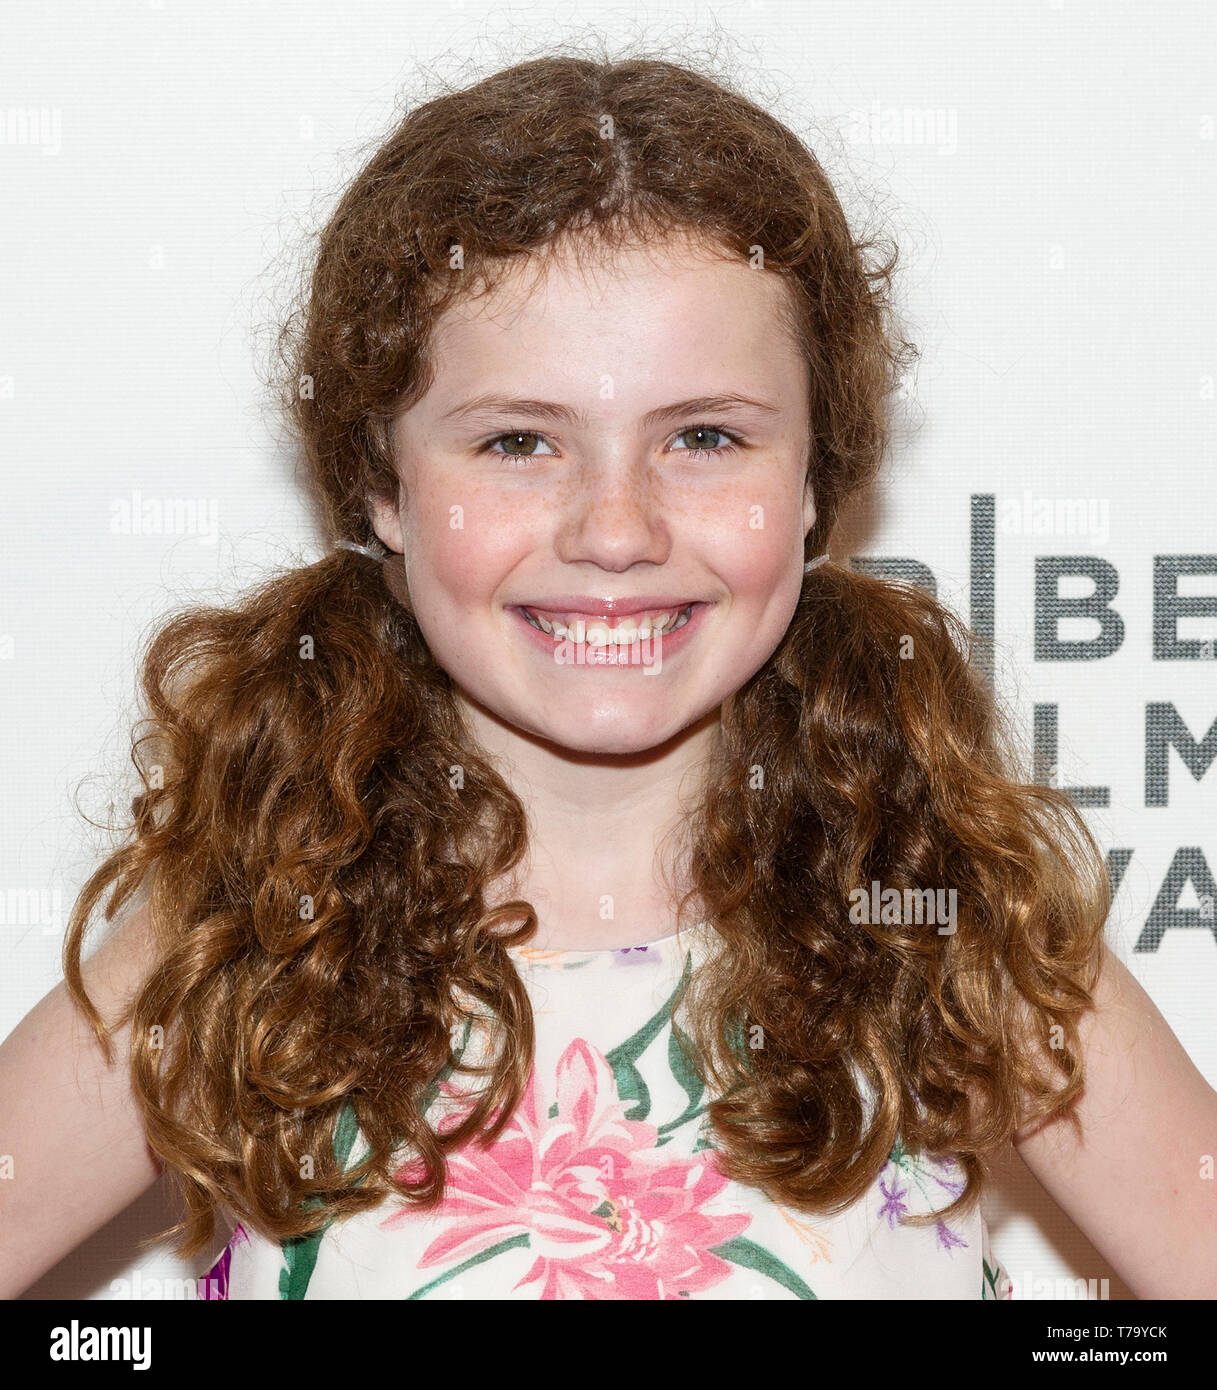 New York, NY - 28 Avril 2019 : Camp Darby actrice assiste à la première de The "merveilles" au cours de la 2019 Tribeca Film Festival au CCMB Theatre Banque D'Images